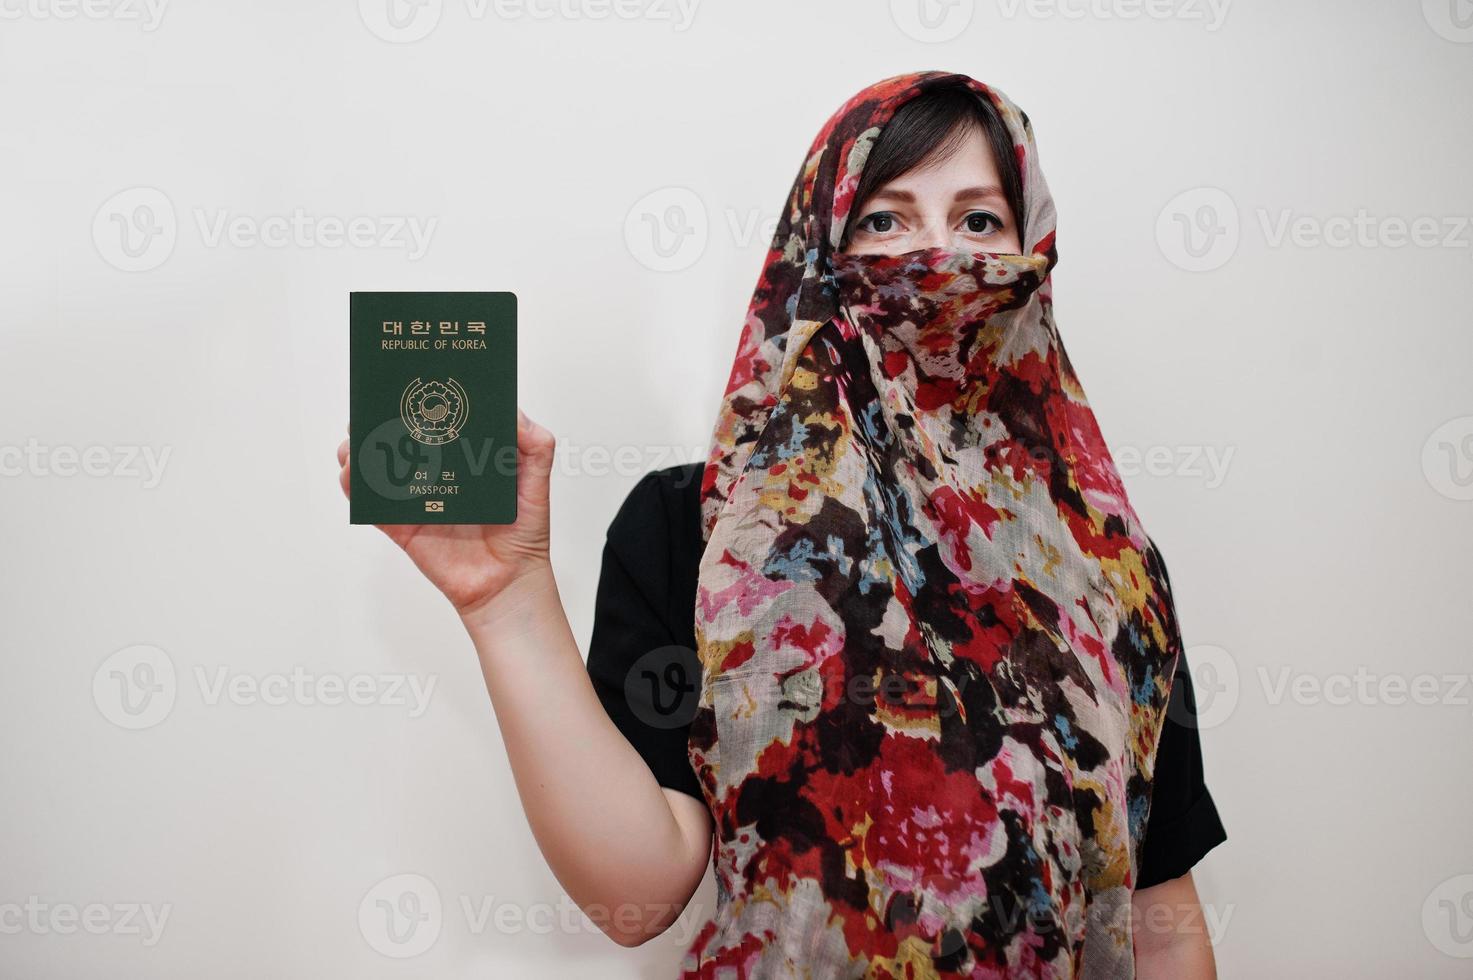 jovem muçulmana árabe em roupas hijab segura passaporte da república da coreia no fundo da parede branca, retrato de estúdio. foto